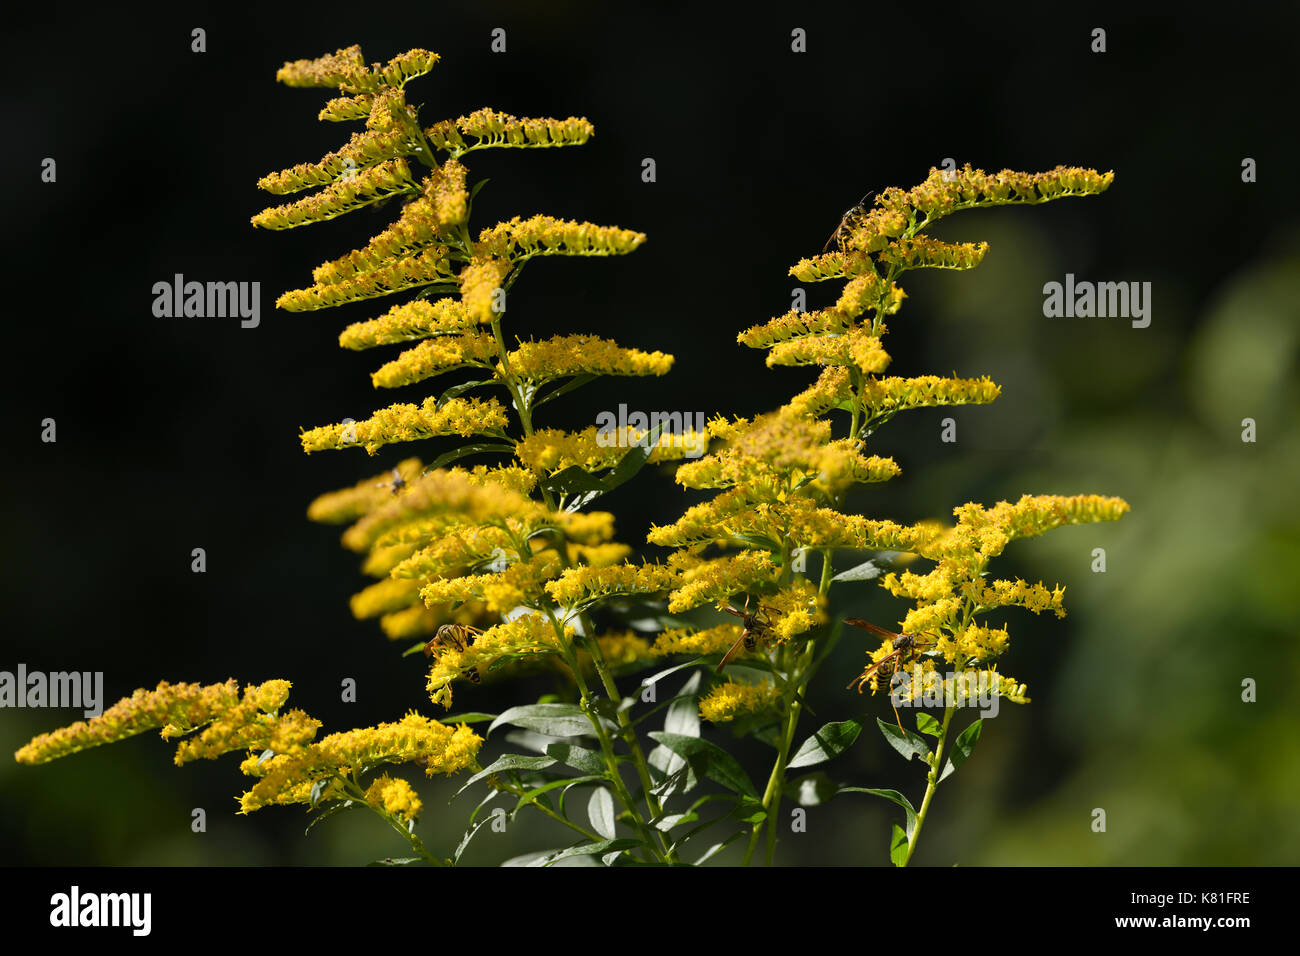 Les guêpes pollinisatrices yellowjacket et papier les fleurs jaunes d'une verge d'herbacée vivace plante en plein soleil toronto canada Banque D'Images